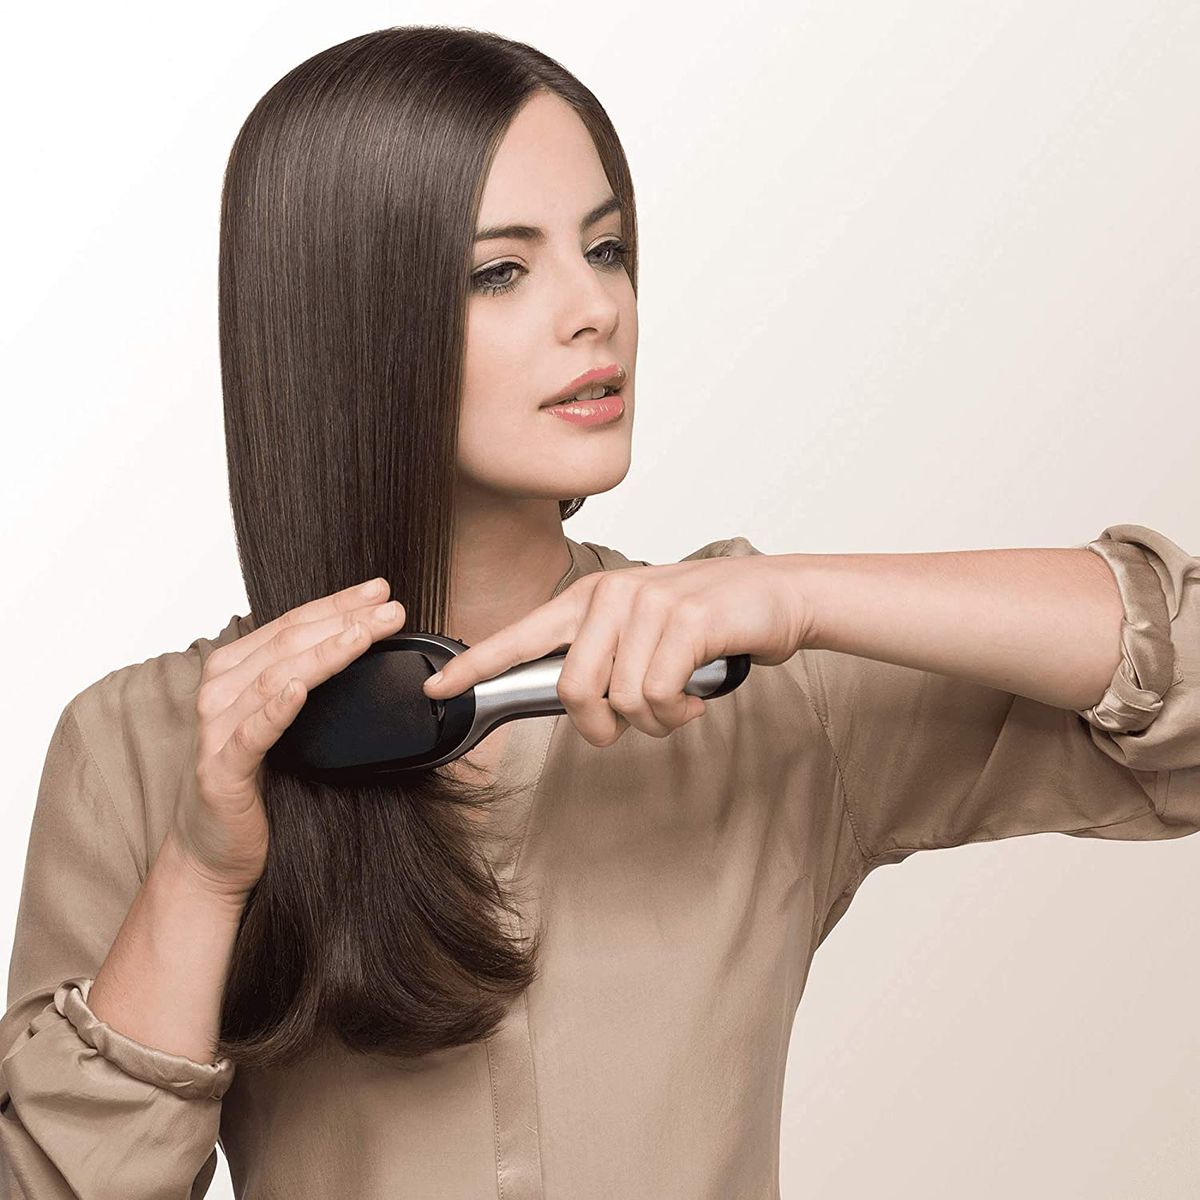 Braun Satin Hair 7 IONTEC Haarbürste, Haarbürste mit Ionentechnologie zur Förderung des Glanzes, BR710, schwarz